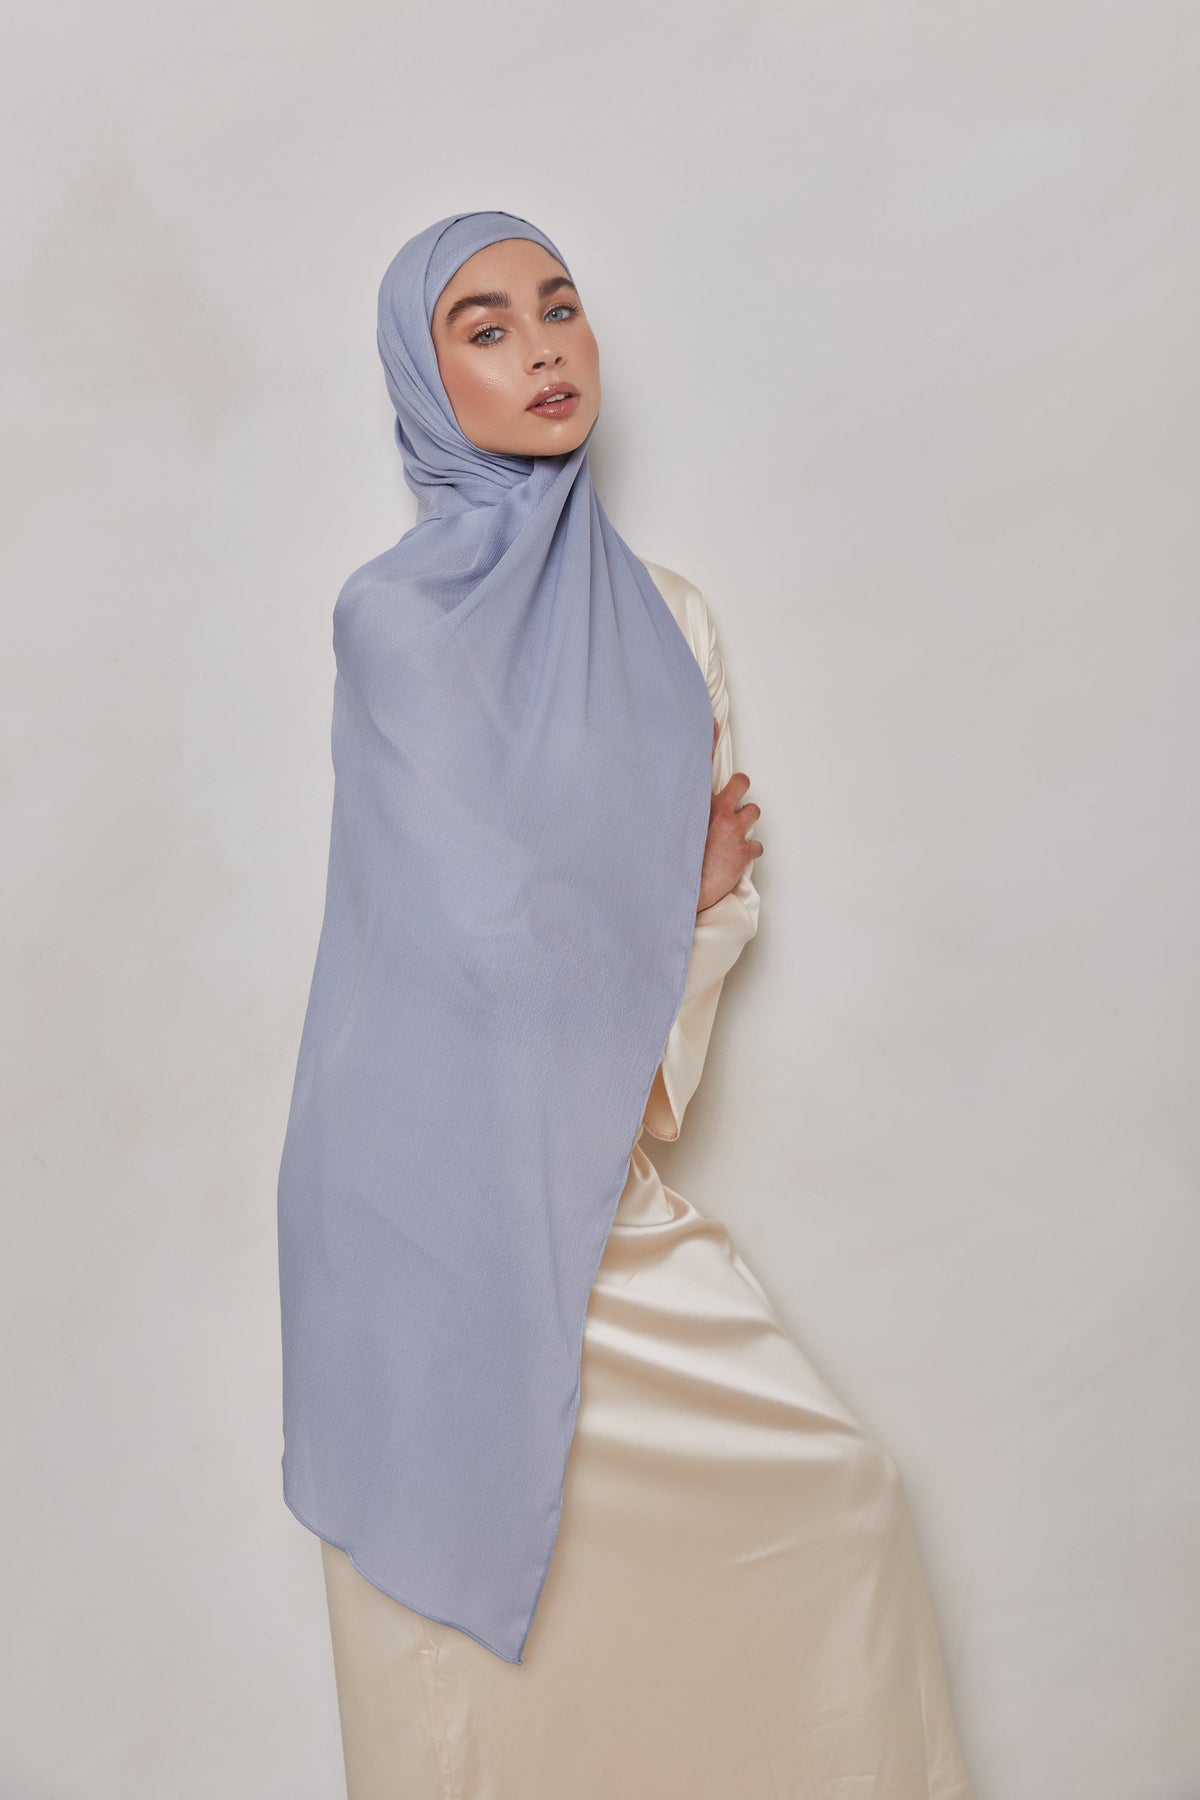 TEXTURE Crepe Hijab - Denim Dots epschoolboard 